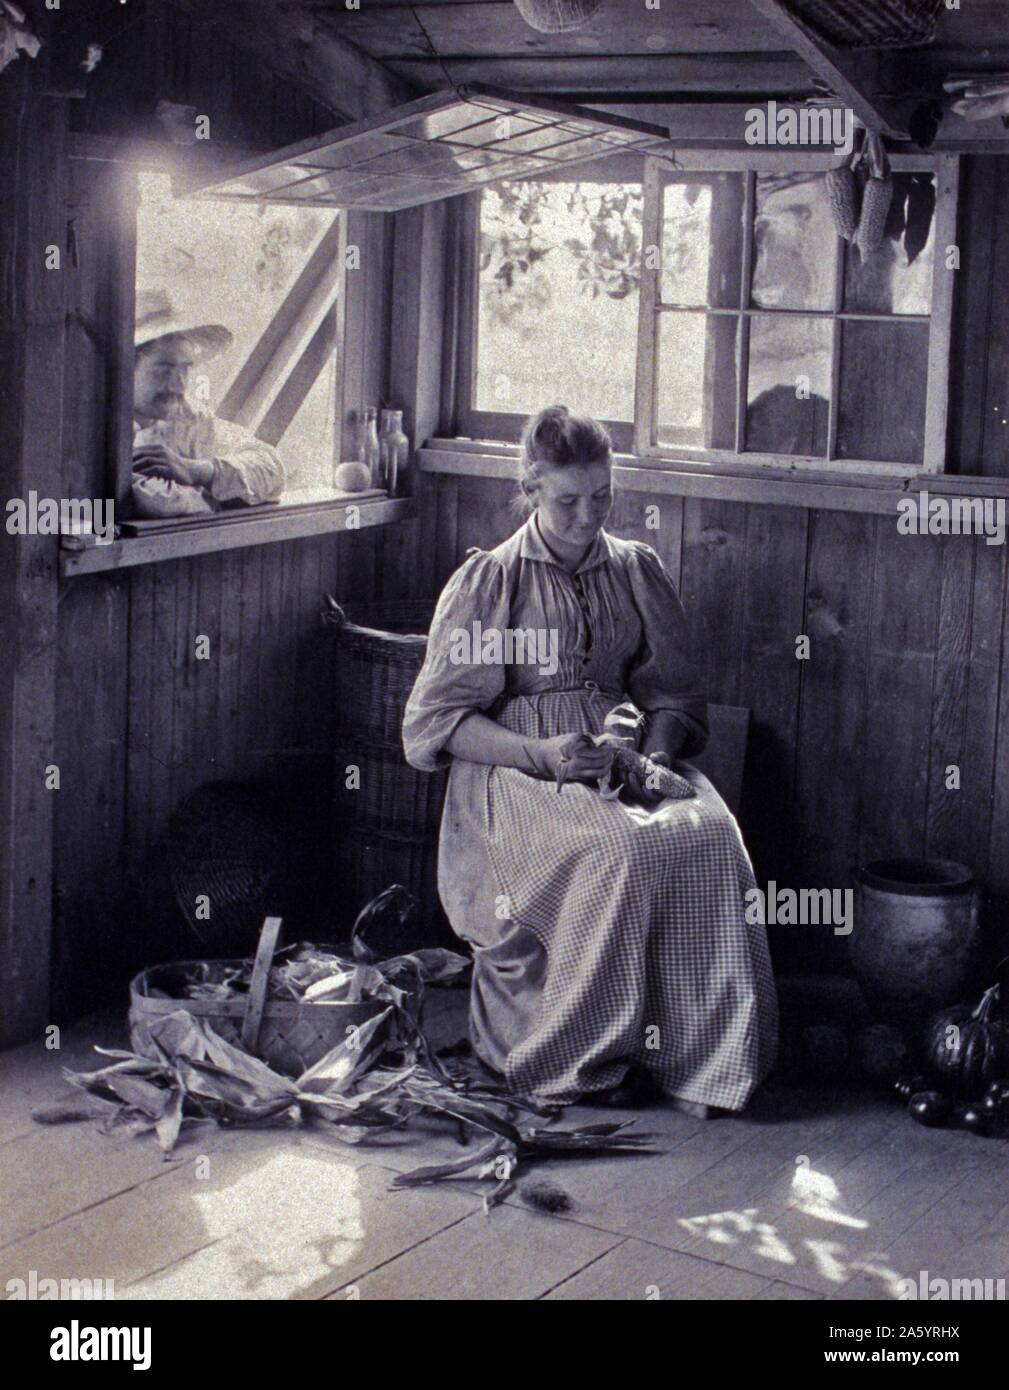 La fotografia mostra la scena rustico di una donna seduta shucking corn mentre un uomo al di fuori si appoggia sul davanzale della finestra. da Sarah Jane Eddy, 1851-1945, fotografo Foto Stock